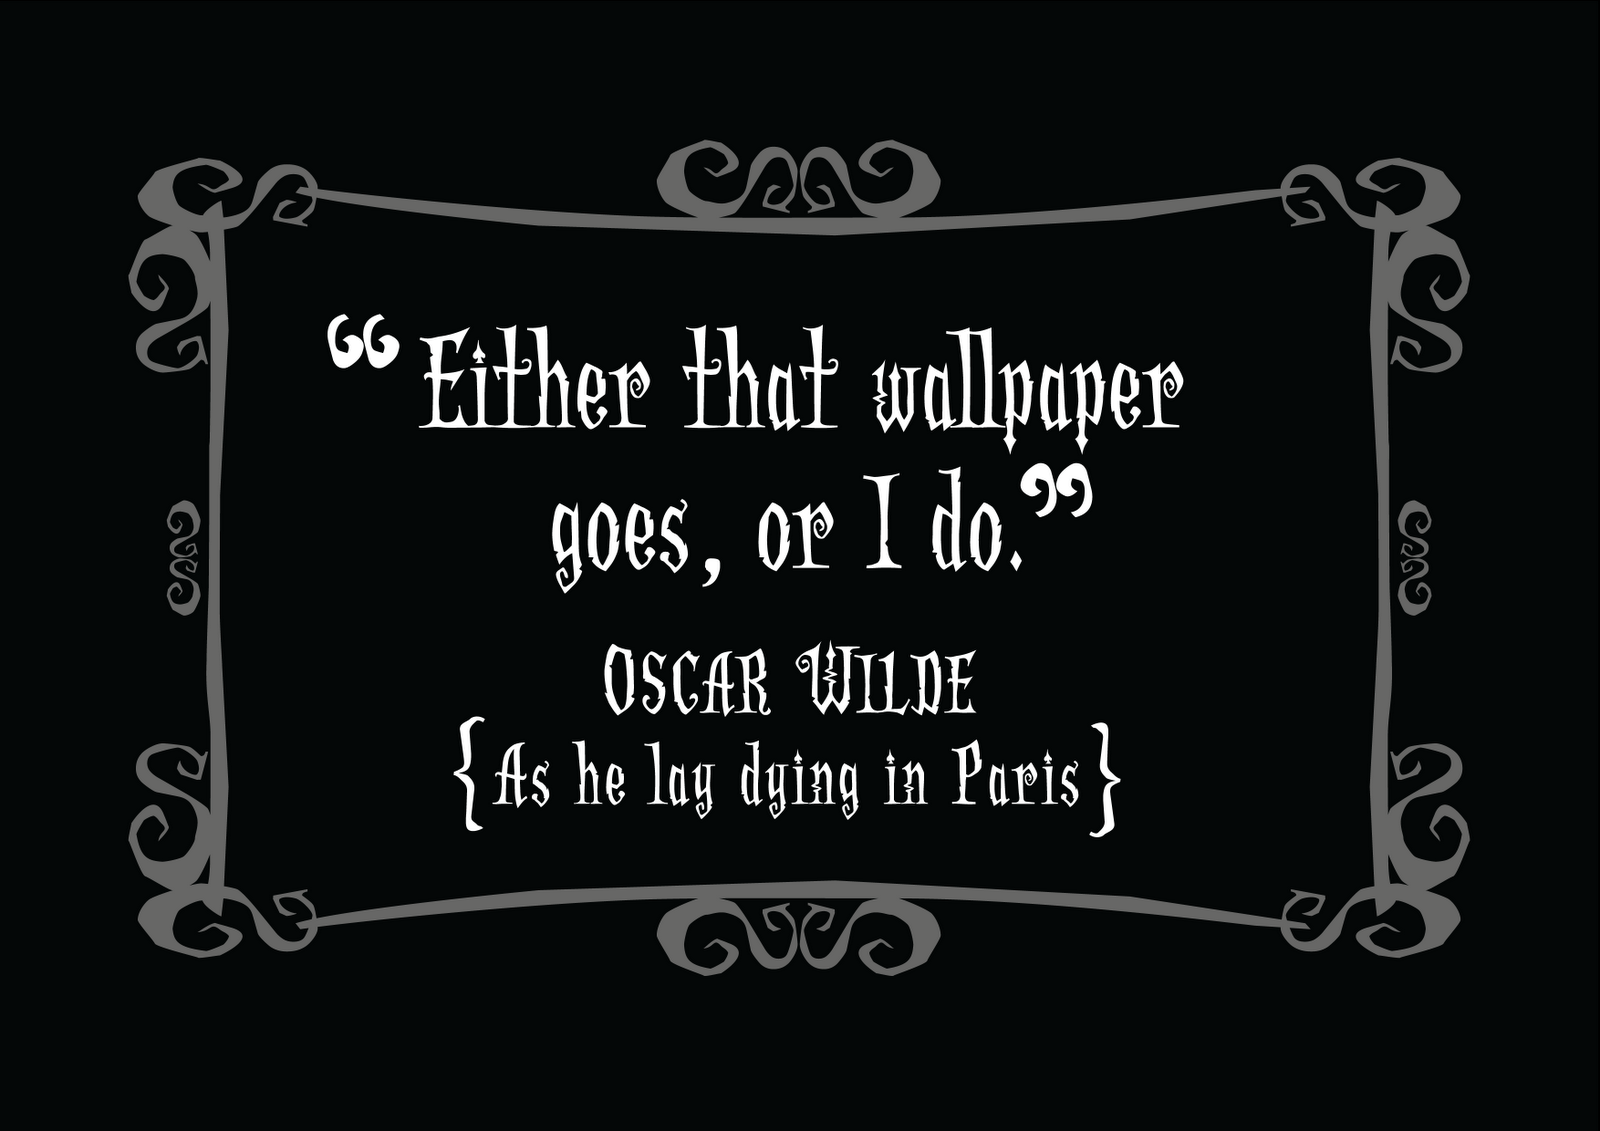 Best Love Quotes Oscar Wilde. QuotesGram